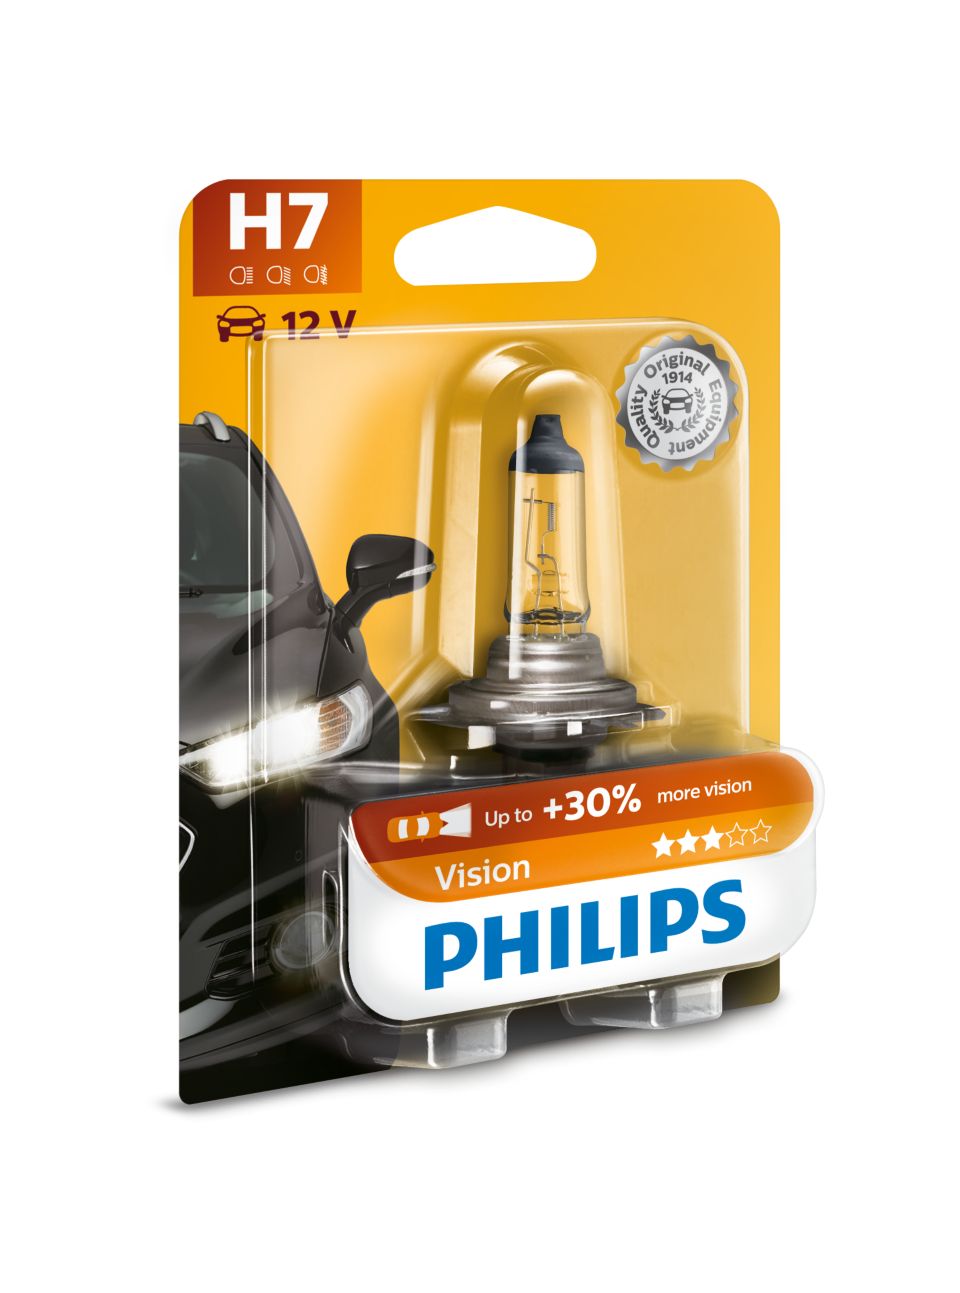 Ampoule de phare H7 12V 55W Philips CityVision moto - pièce équipement